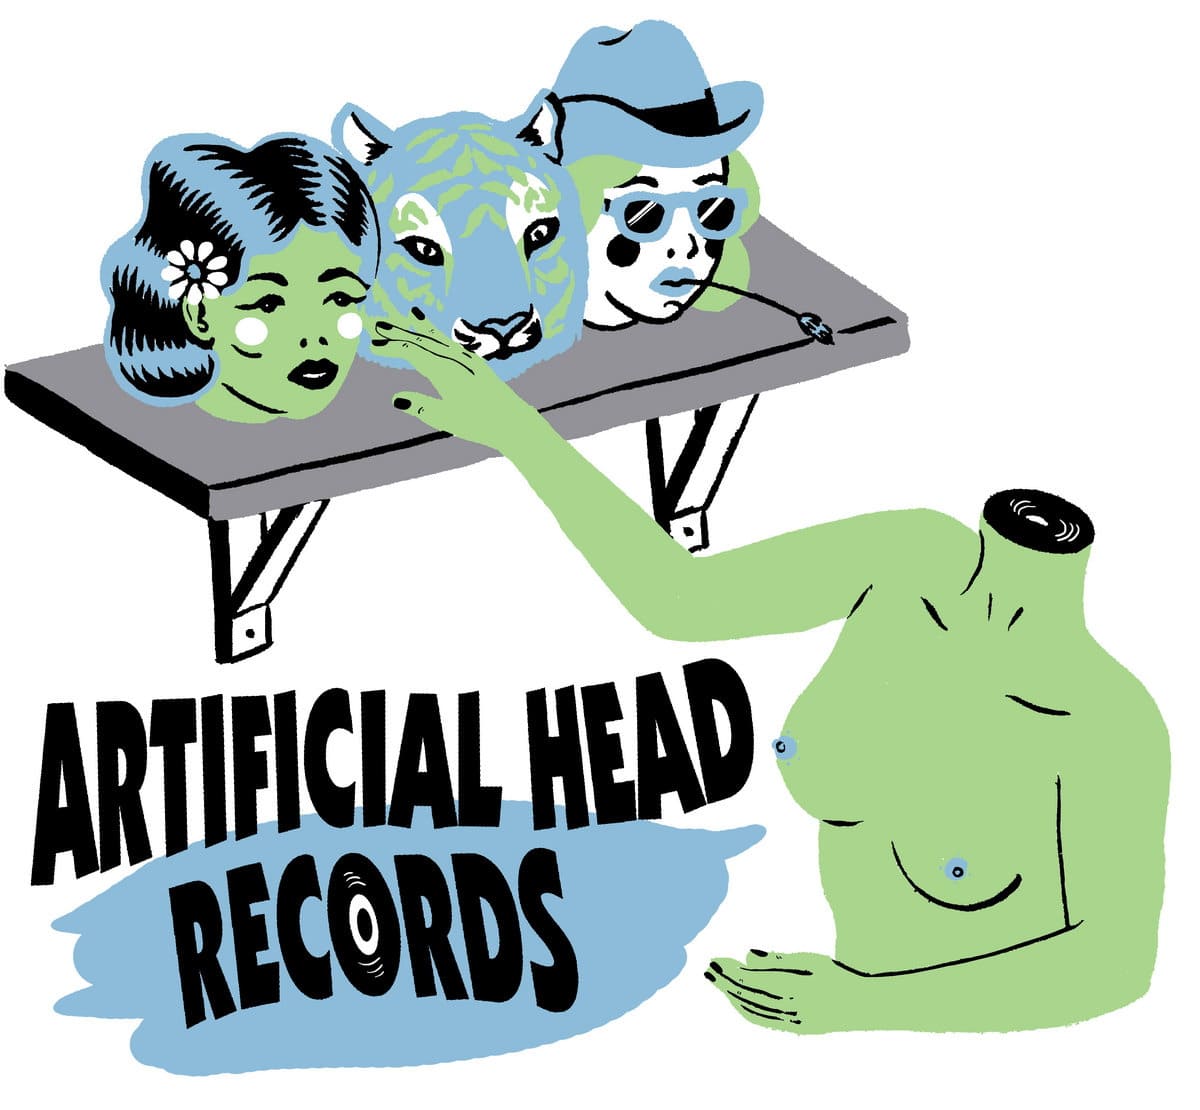 Artficial Head Records